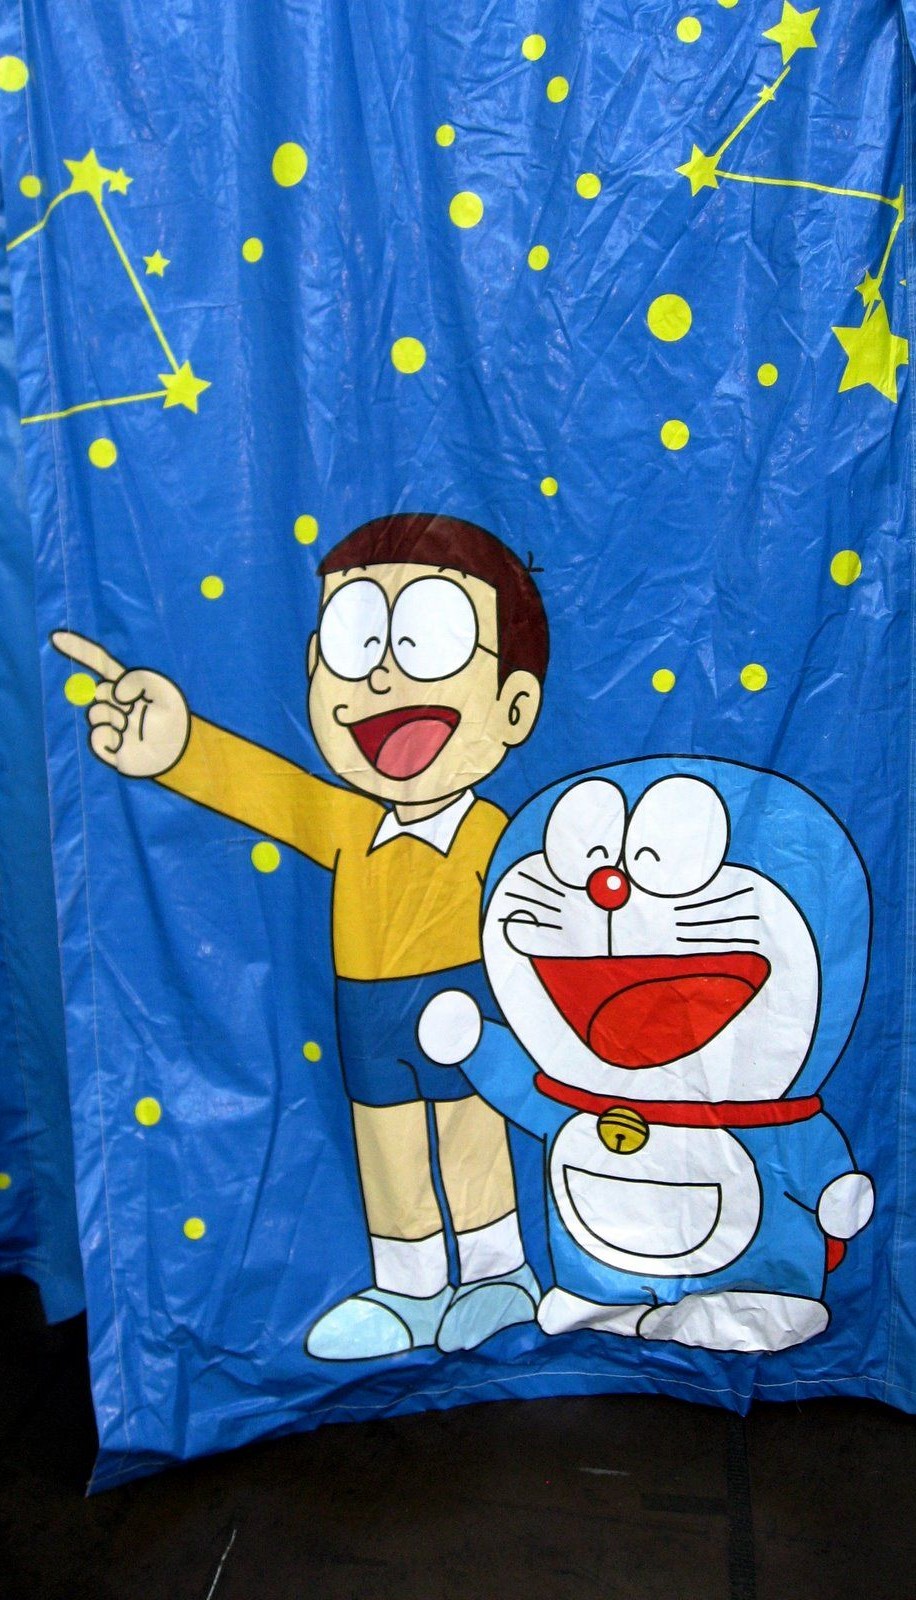 Top 35 Doraemon Wallpapers [ 4k + HD ]